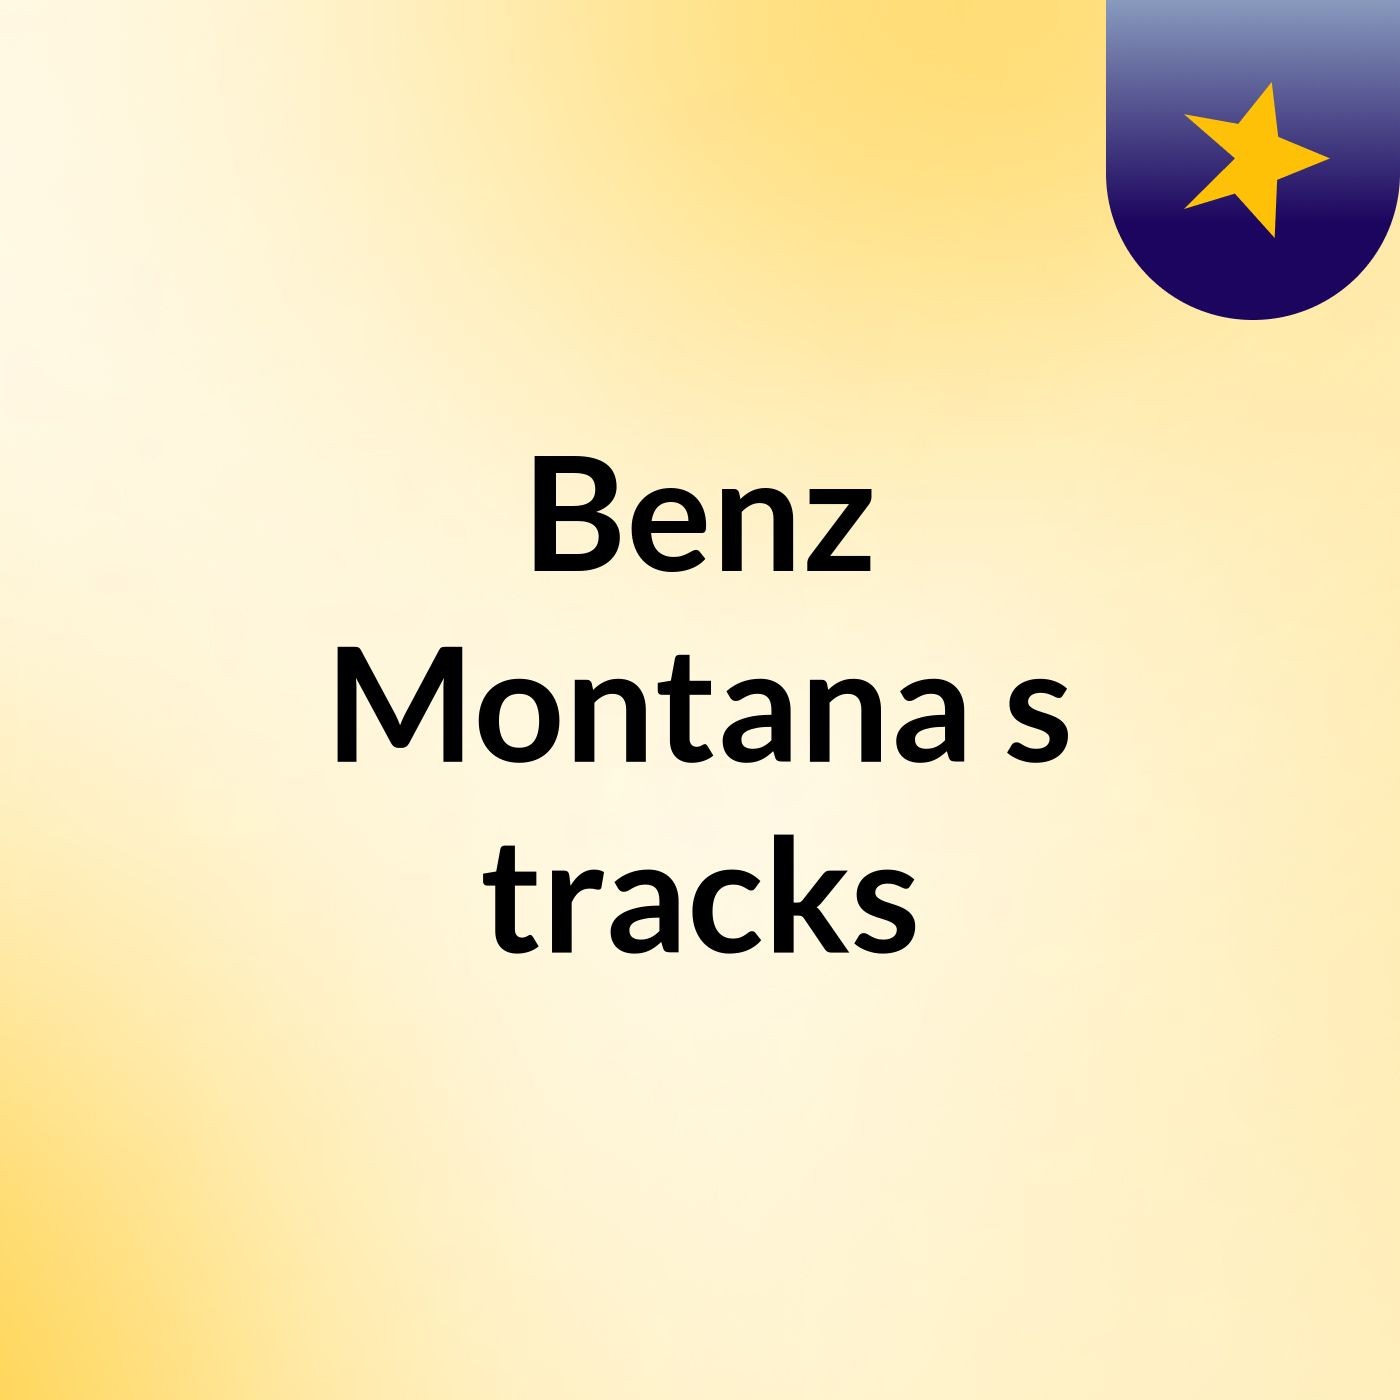 Benz Montana's tracks